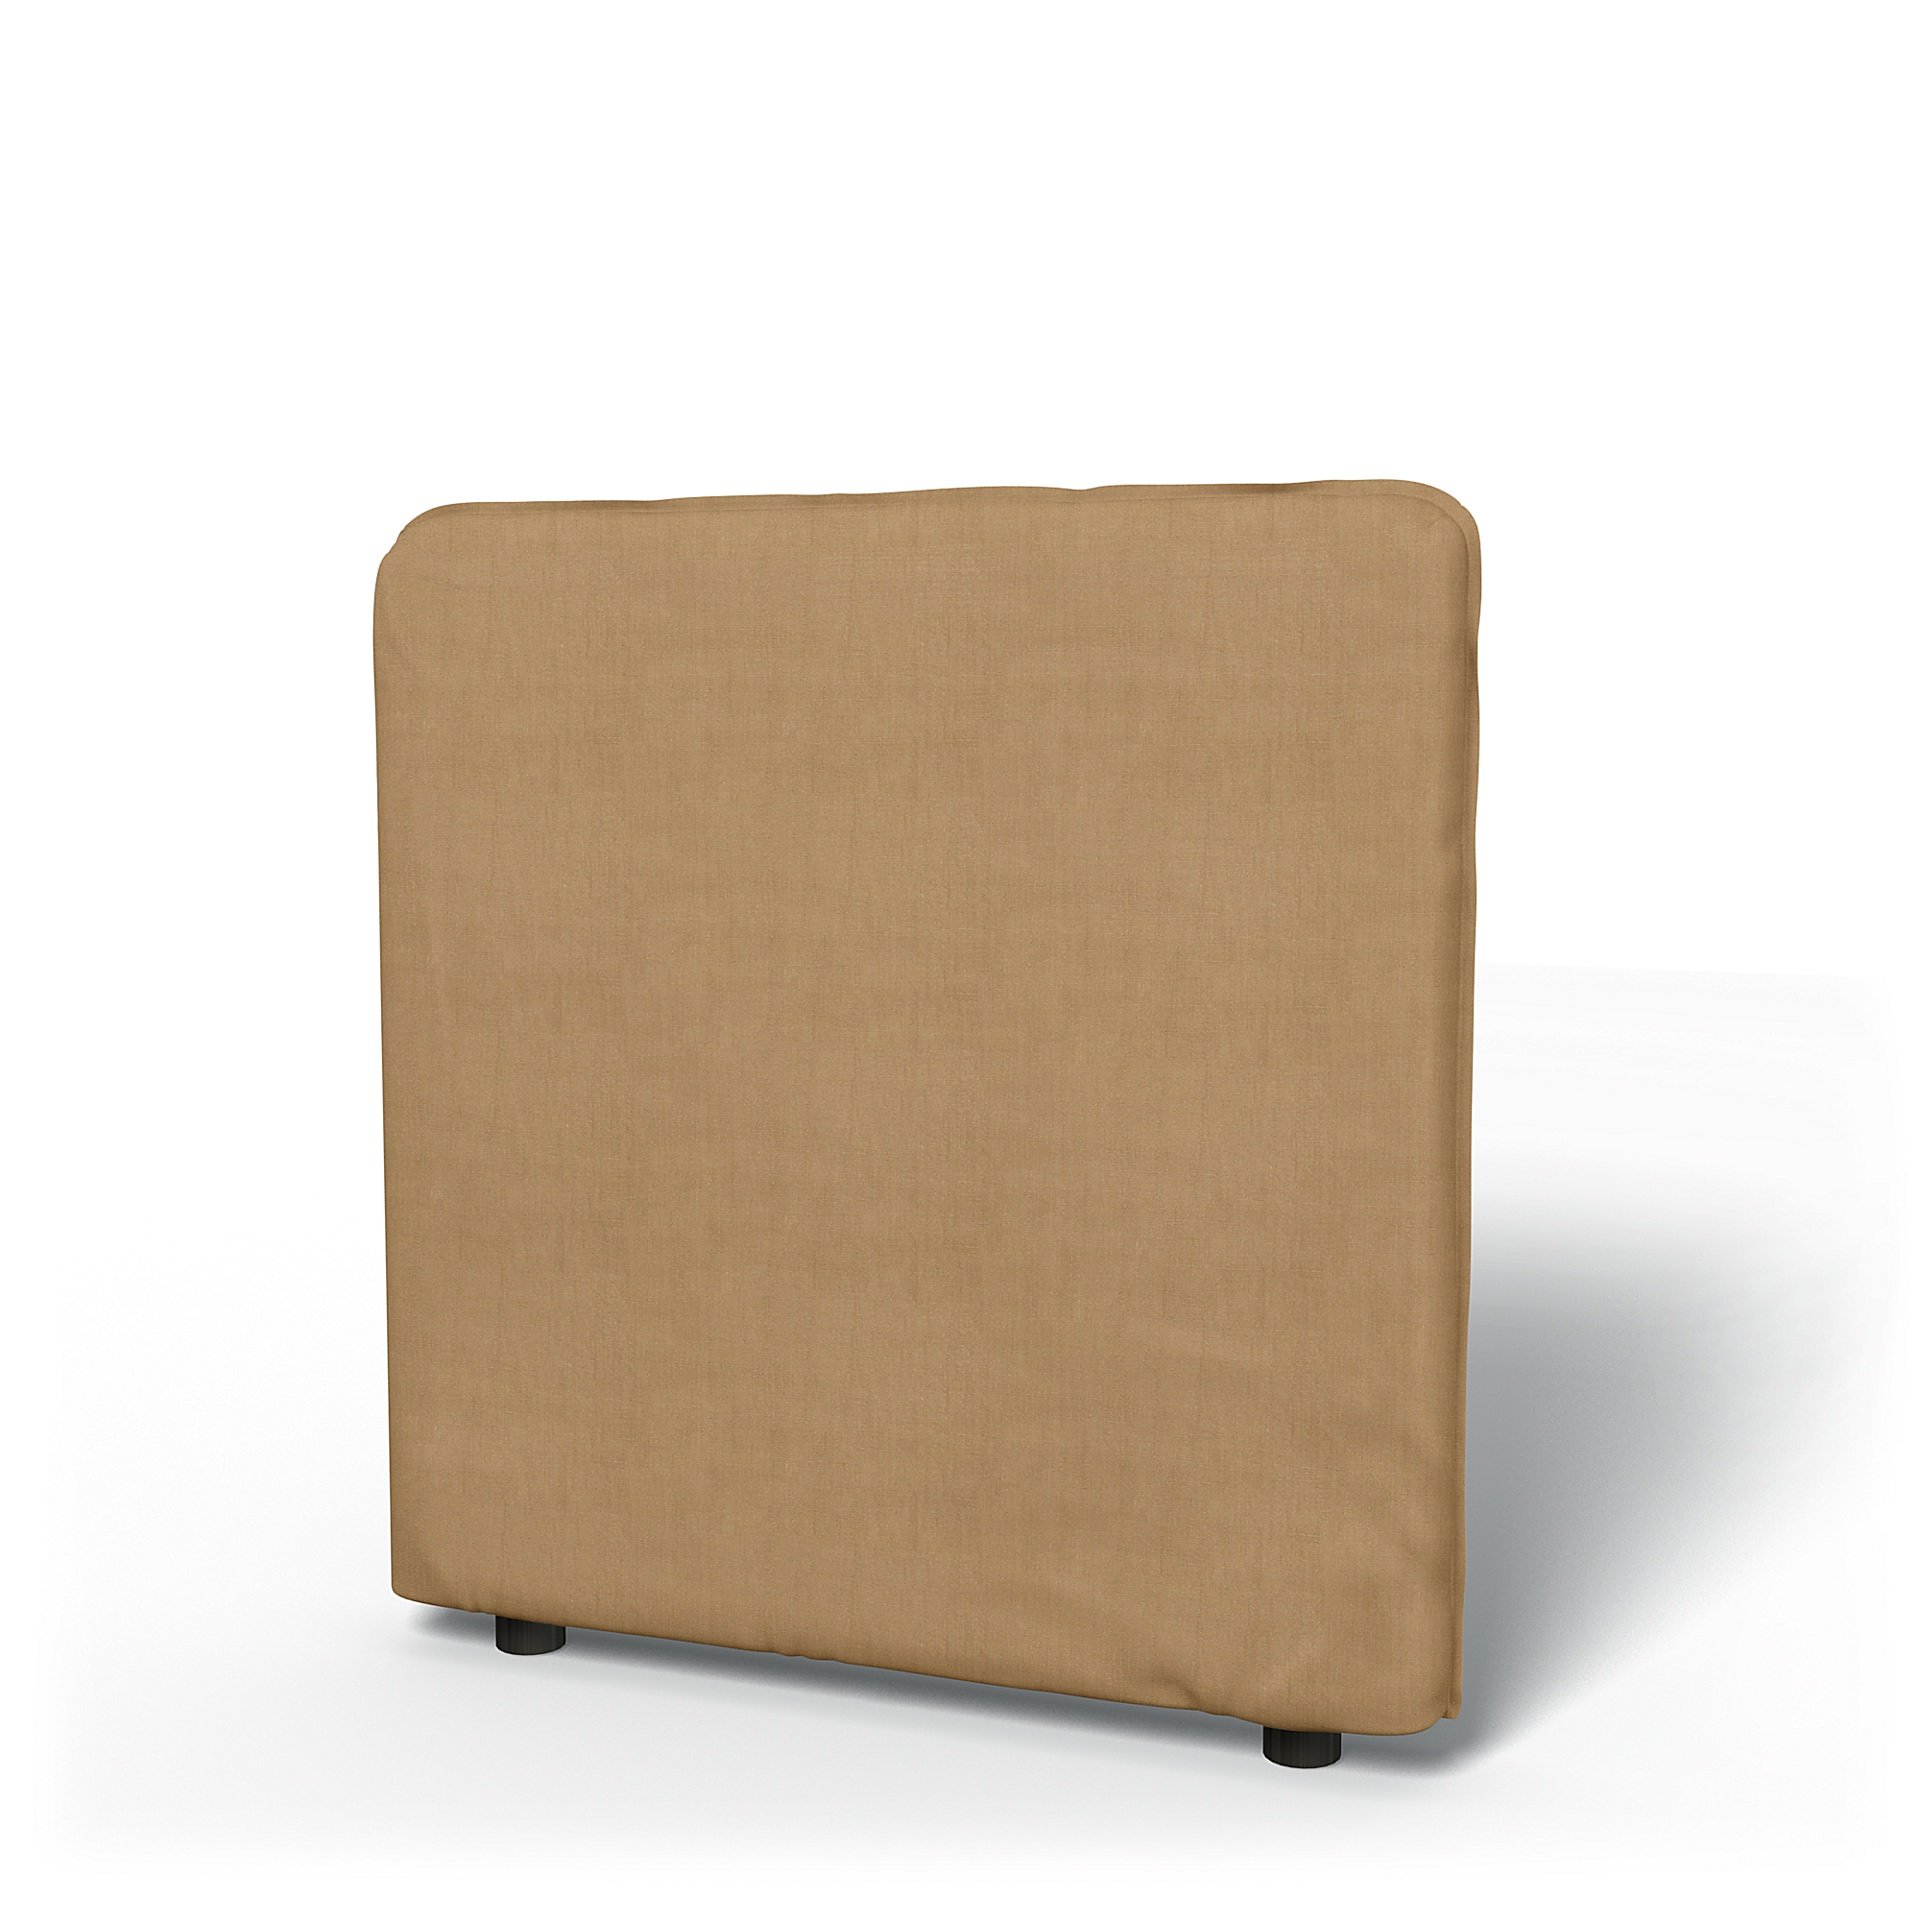 IKEA - Vallentuna Low Backrest Cover 80x80cm 32x32in, Hemp, Linen - Bemz